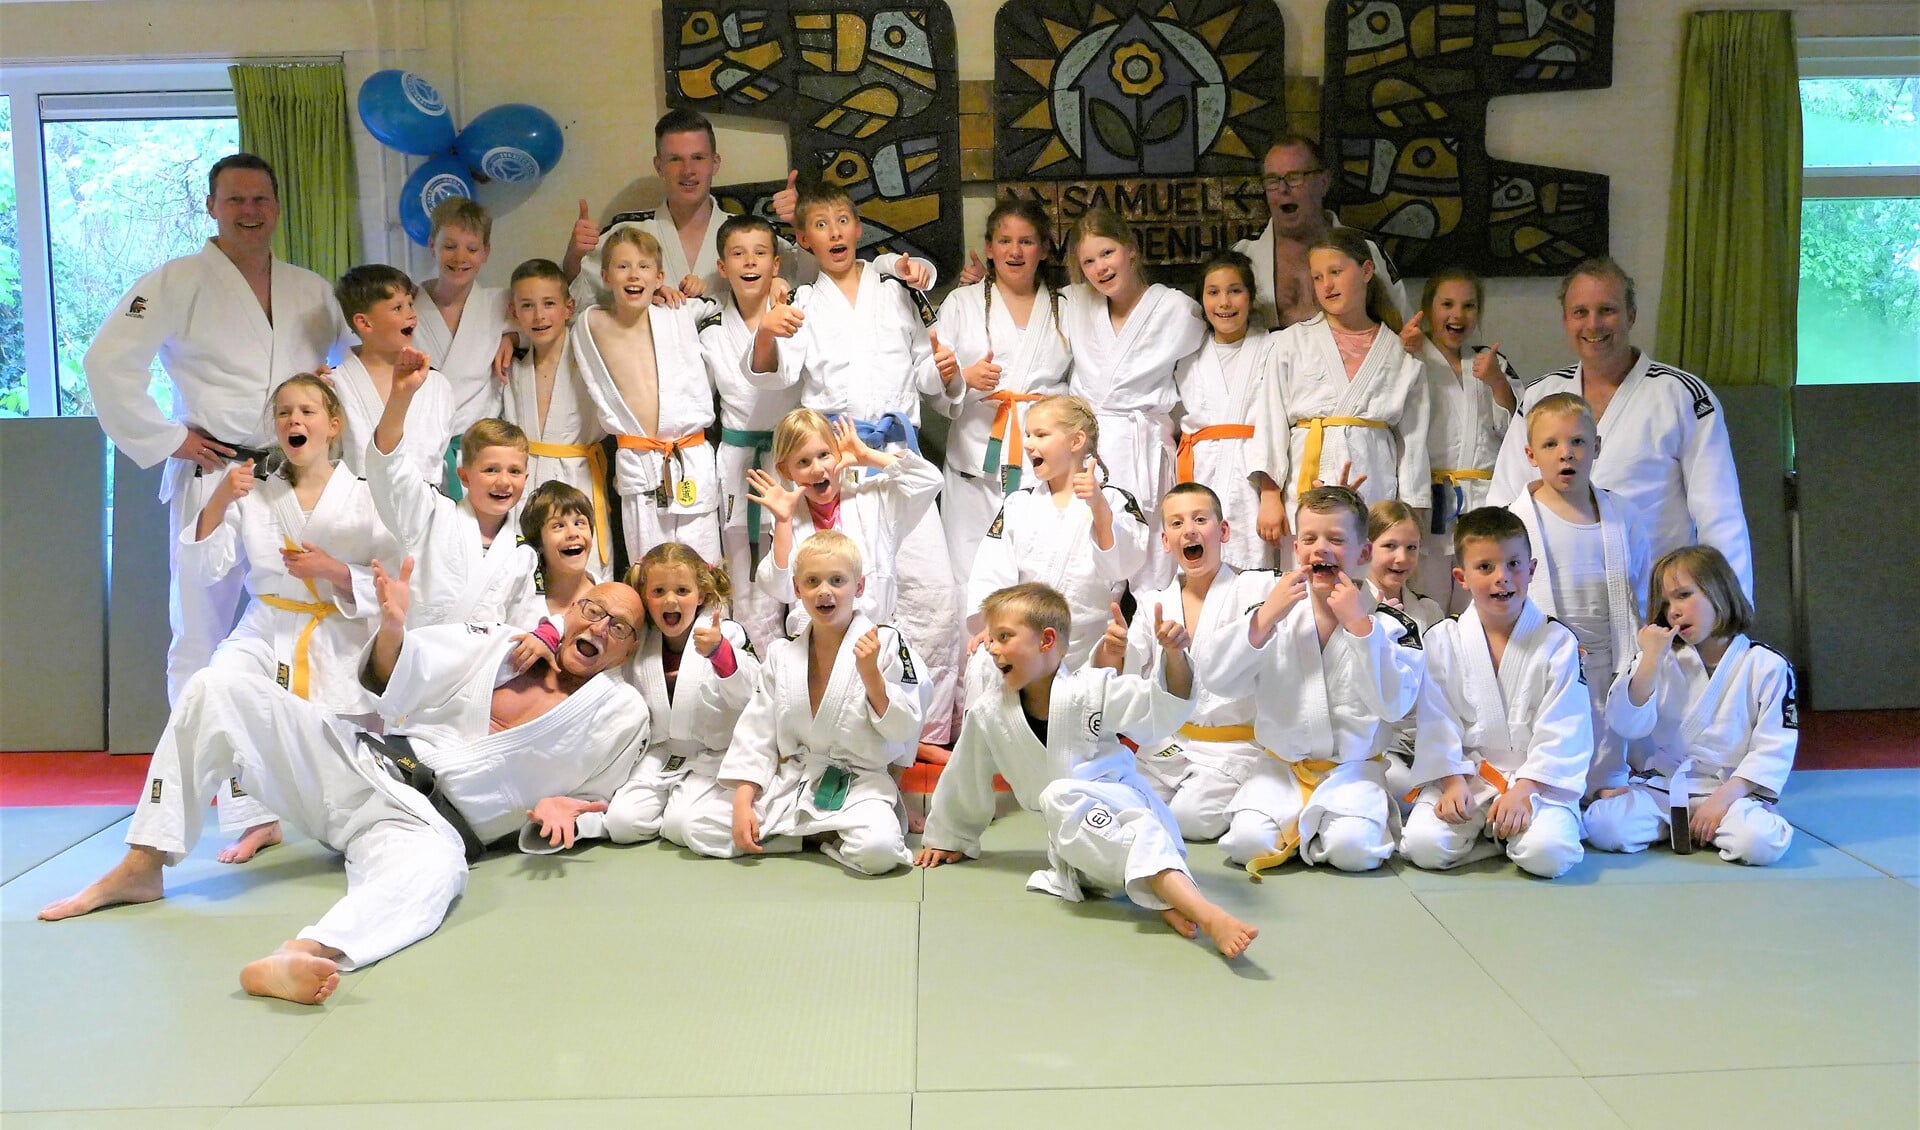 De judoka's van JC Ichikan hielden vorige week een zeer geslaagd judokamp bij het Samuel Naardenhuis in Oostvoorne. 